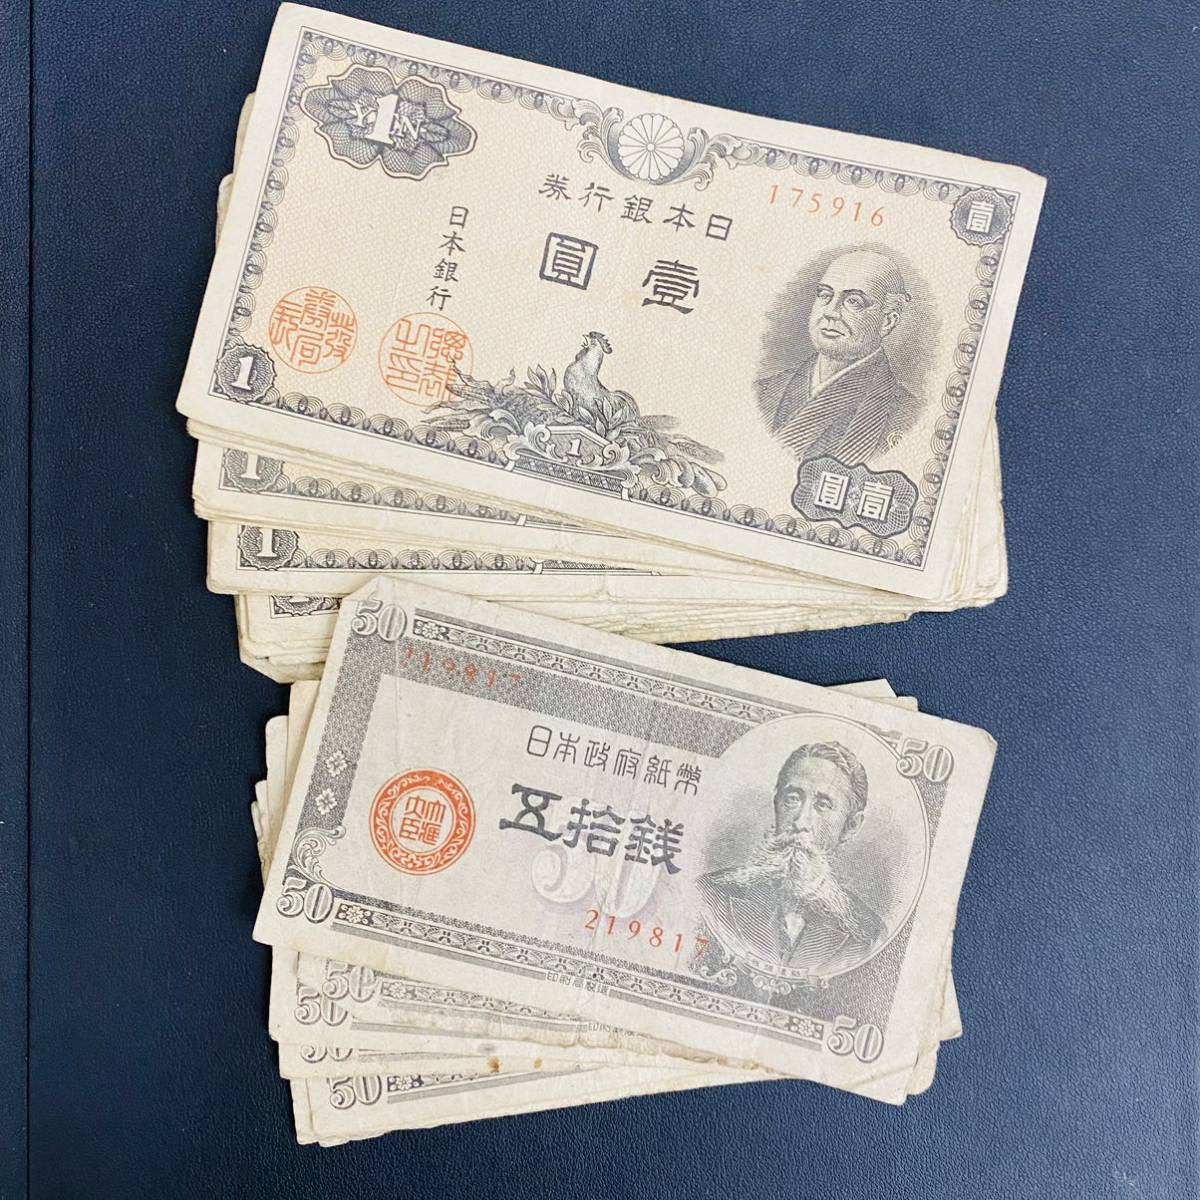 日本に レア 希少 旧紙幣50銭札坂垣退助5銭札楠木正像 各1枚 shop 